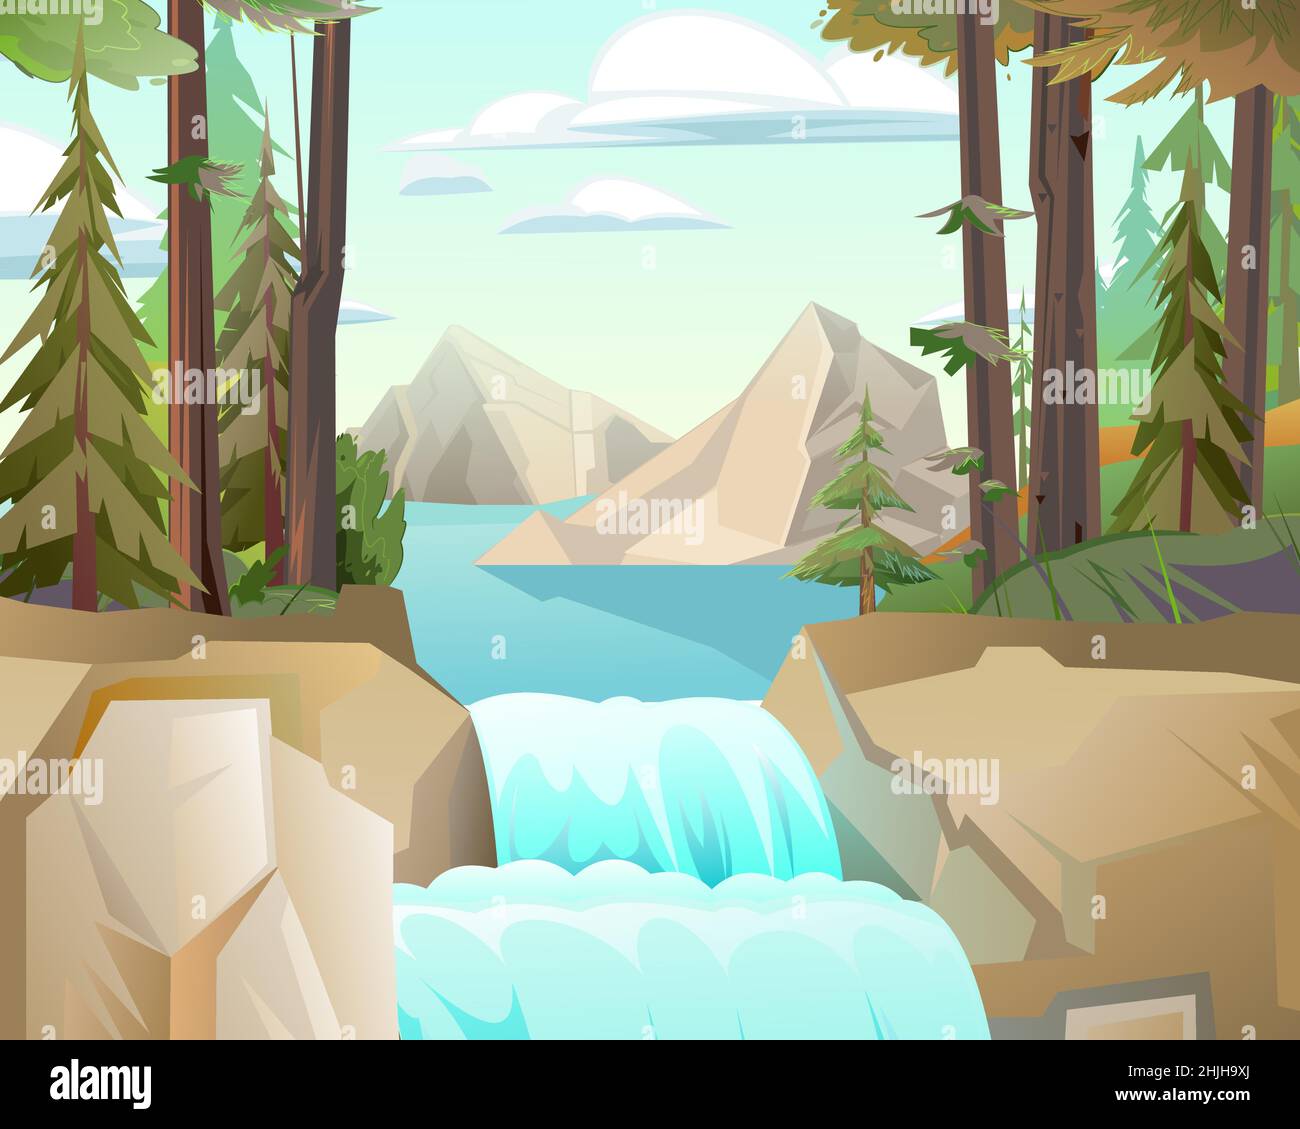 Nördliche Landschaft mit Wasserfall zwischen Felsen. Kaskade schimmert nach unten. Fließendes Wasser. Schöner Cartoon-Stil. Flaches Design. Vektor. Stock Vektor